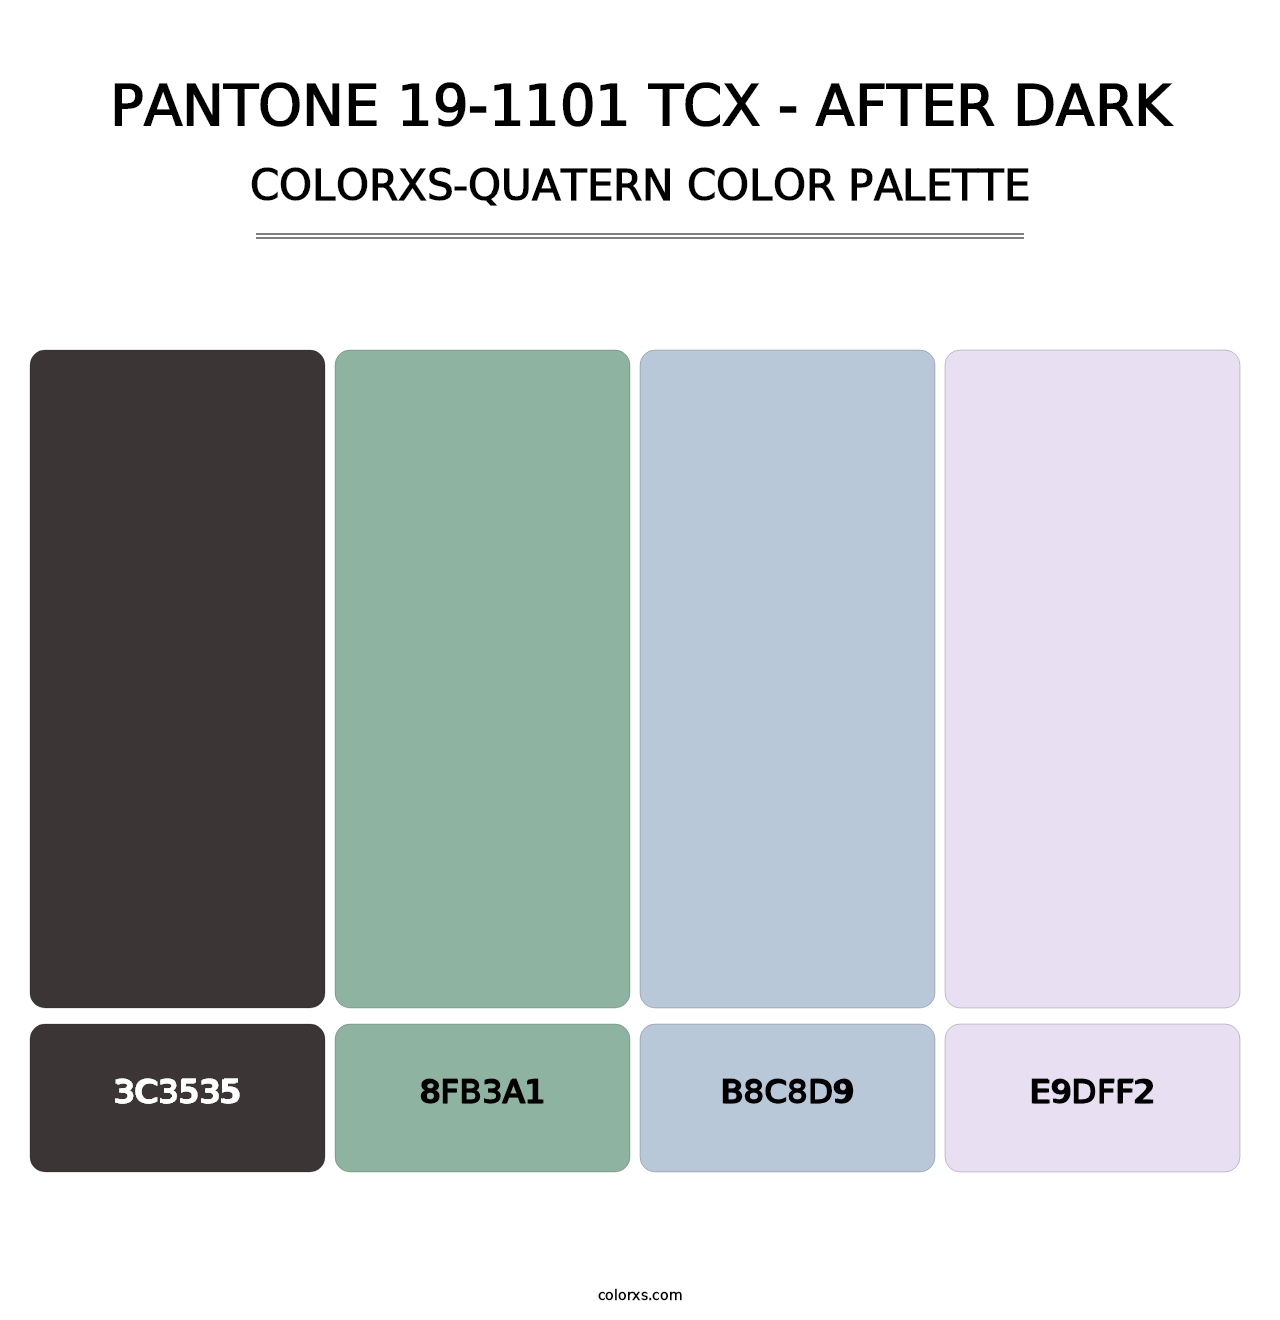 PANTONE 19-1101 TCX - After Dark - Colorxs Quatern Palette